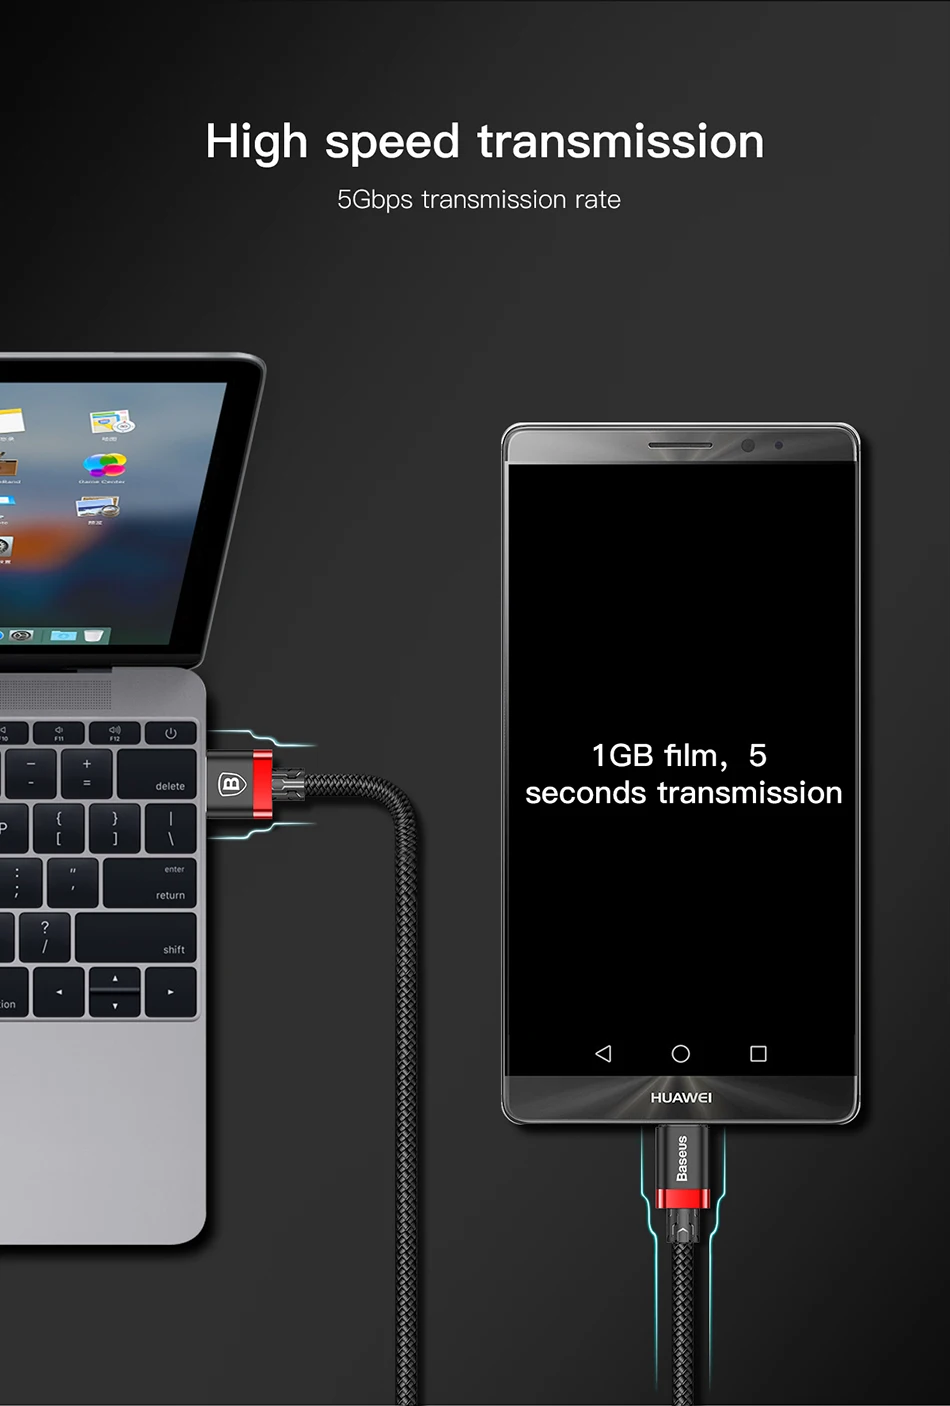 Baseus Тип usb C зарядный кабель для samsung Galaxy S9 S8 плюс Note8 USB 3,0 Тип-с быстрый зарядный кабель для передачи данных для oneplus 6 NEX 5 t 5 max